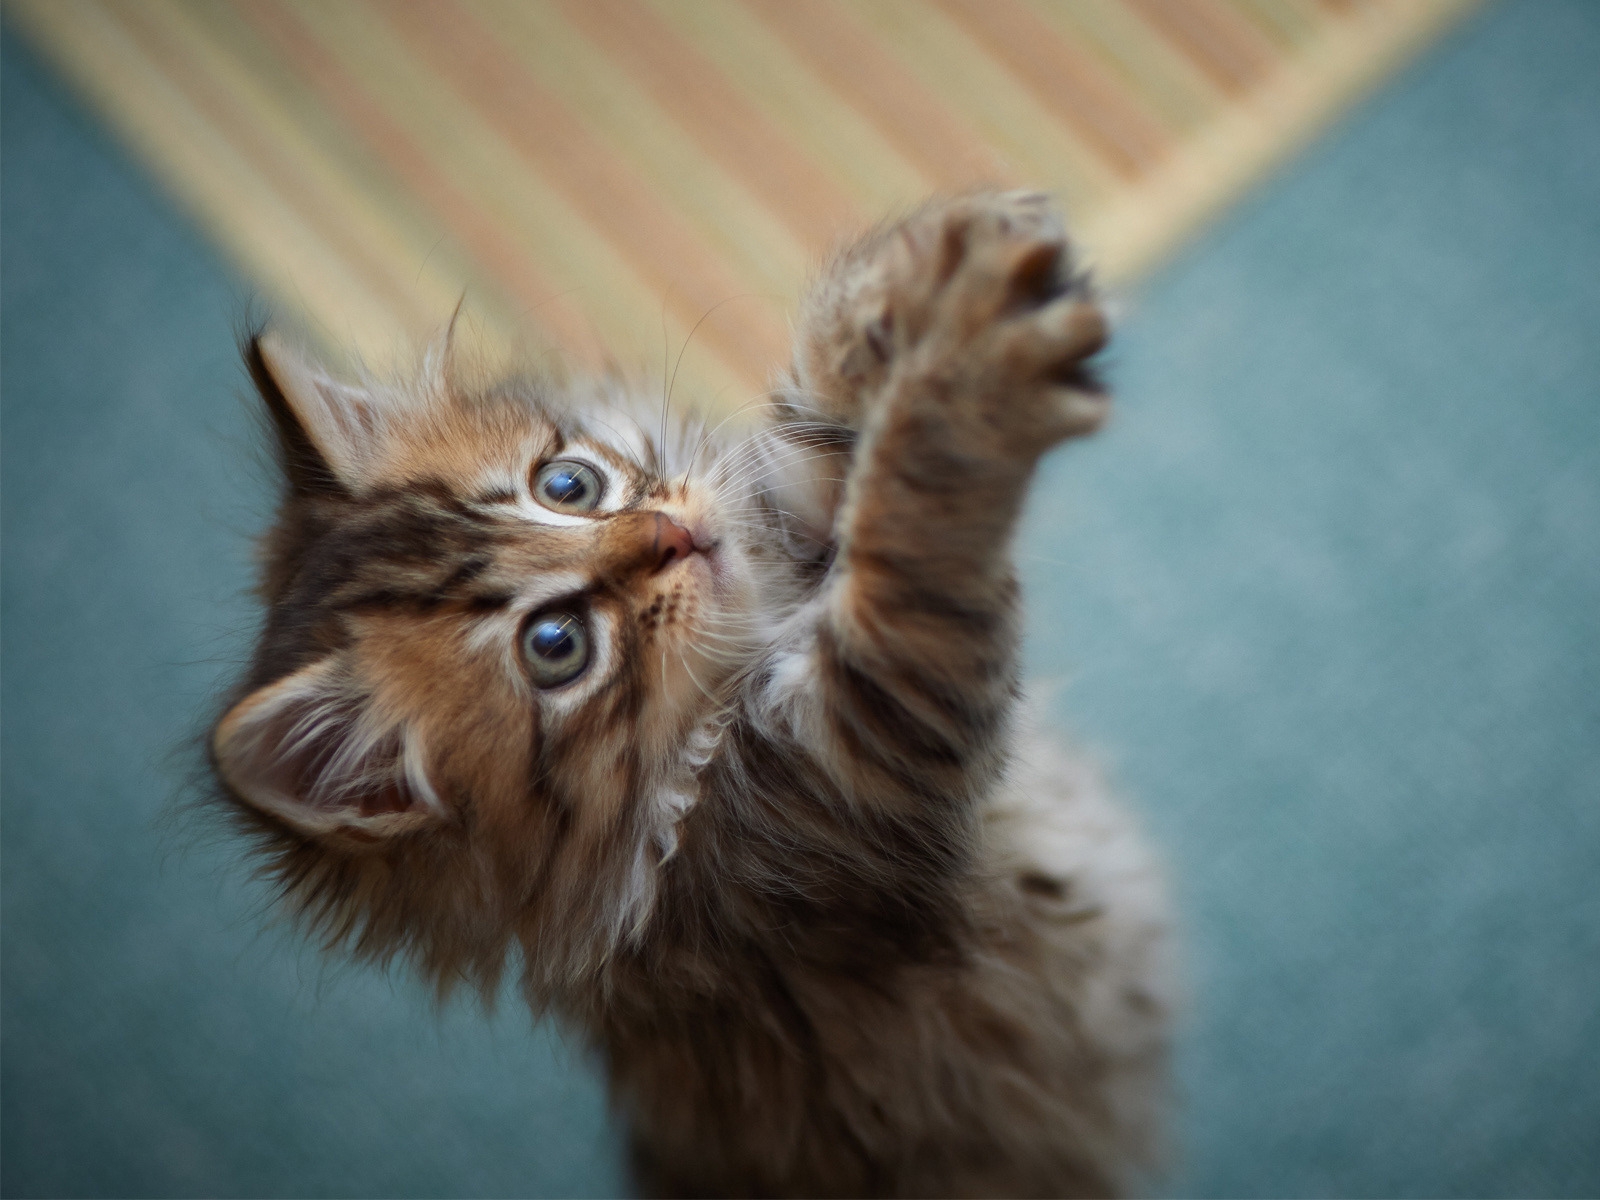 Fluffy Kitten for 1600 x 1200 resolution